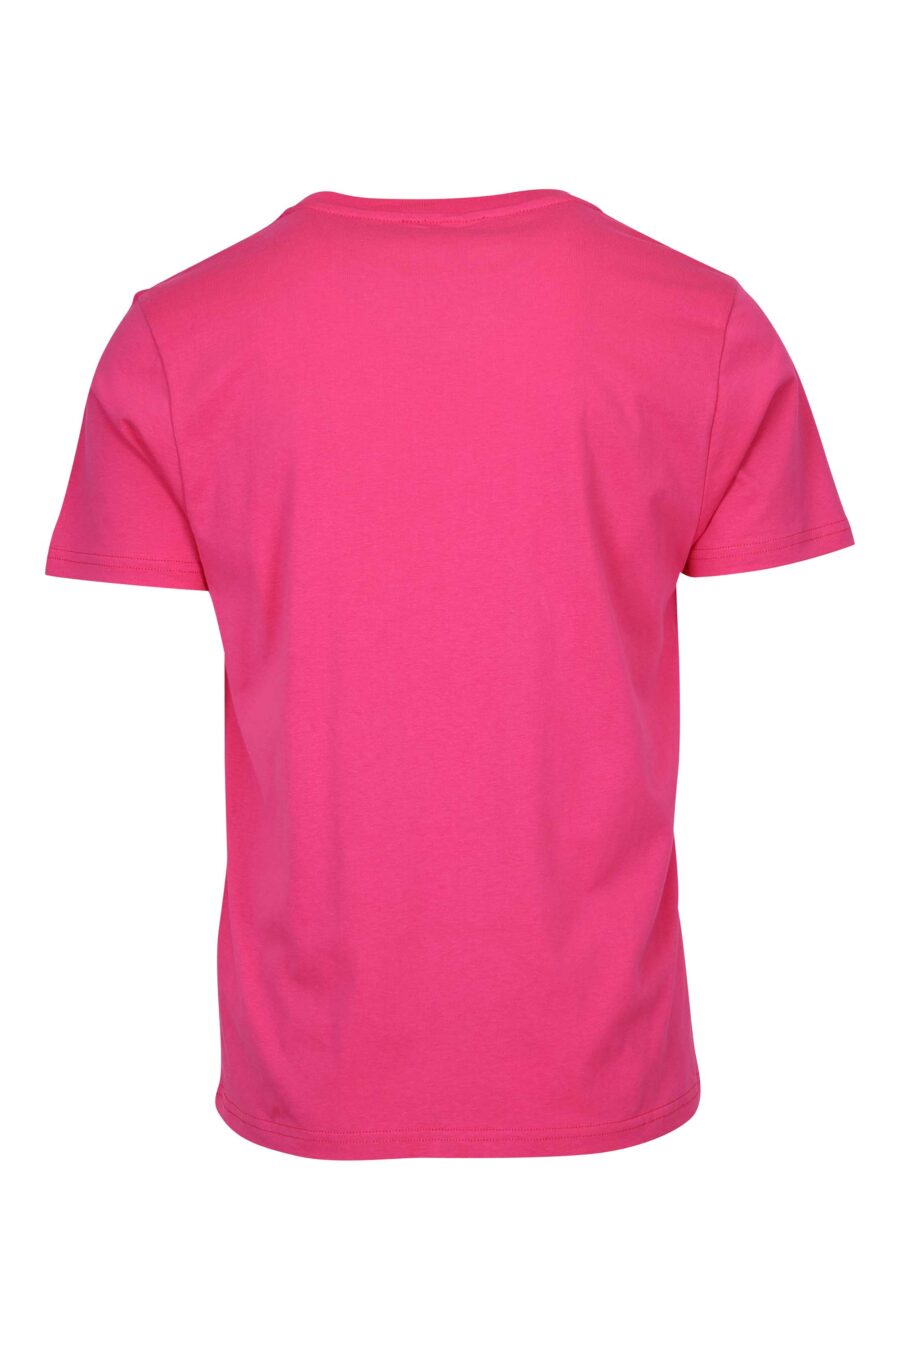 T-shirt fuchsia avec logo en caoutchouc monochrome sur les épaules - 667113671888 1